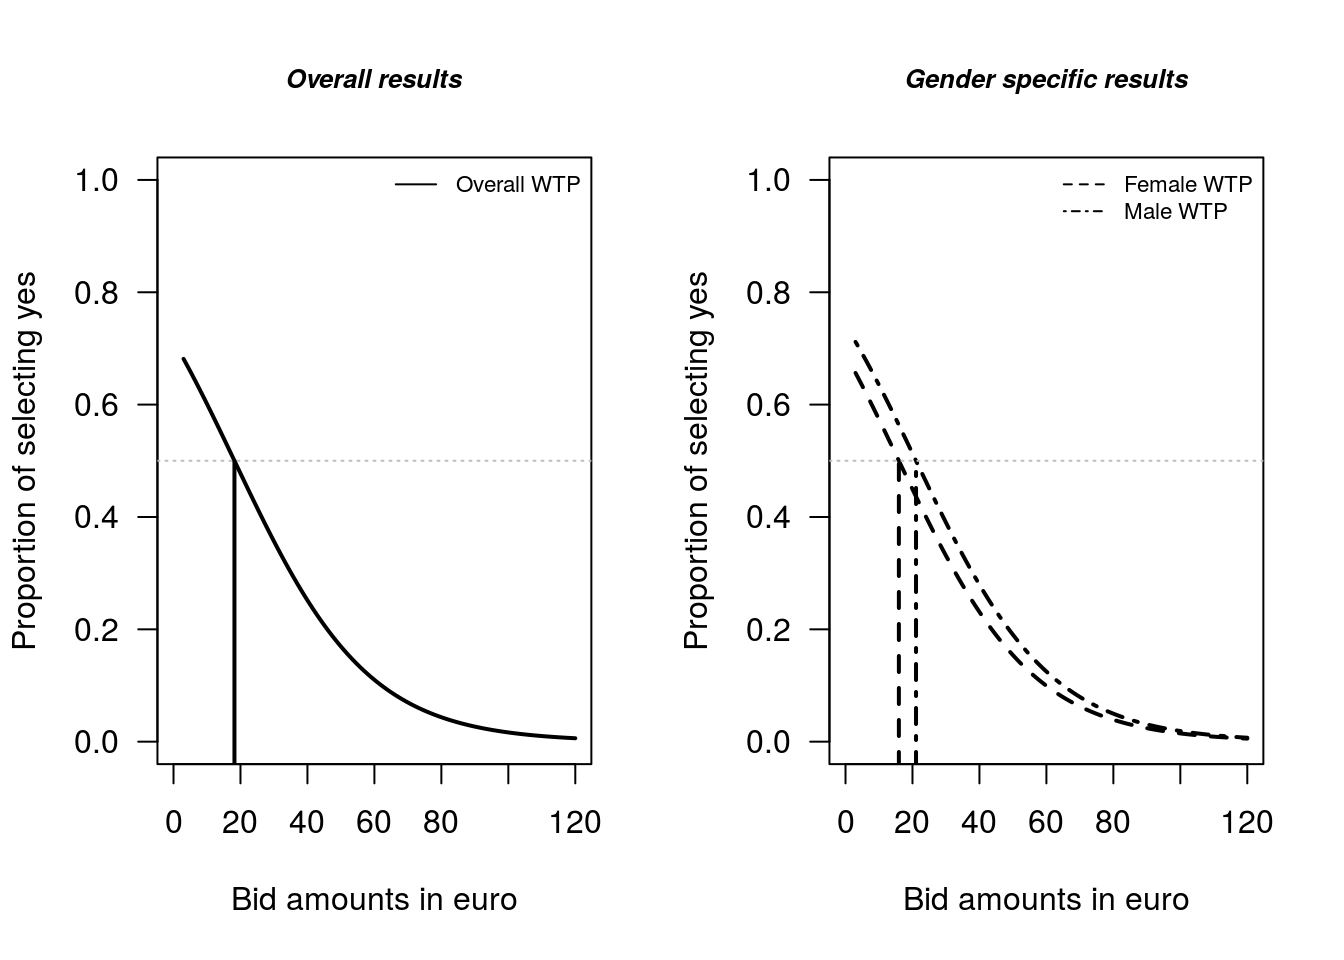 Comparison of Female and Male WTP estimates